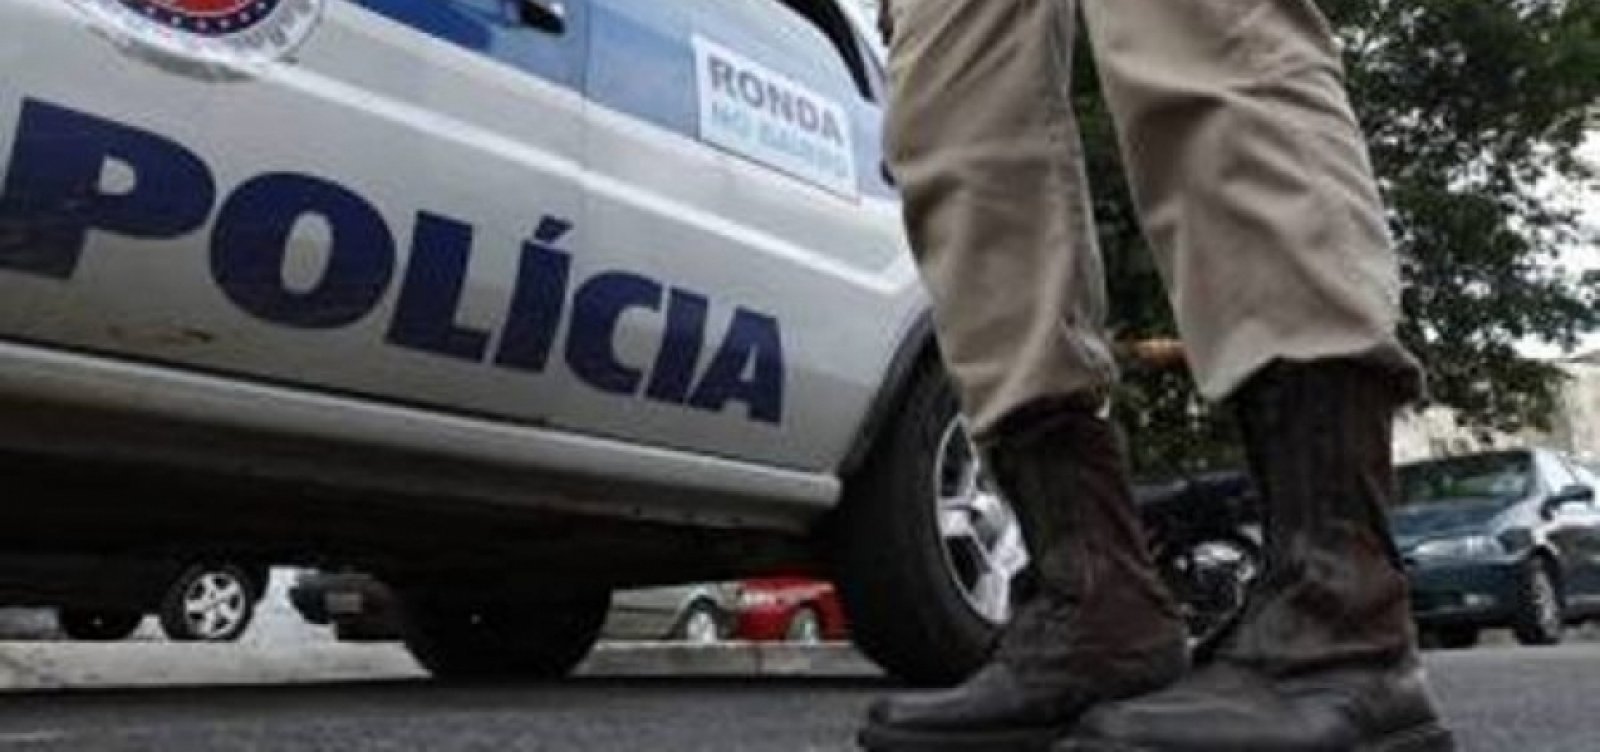 Terceiro suspeito de envolvimento em morte de policiais em Salvador é morto em confronto